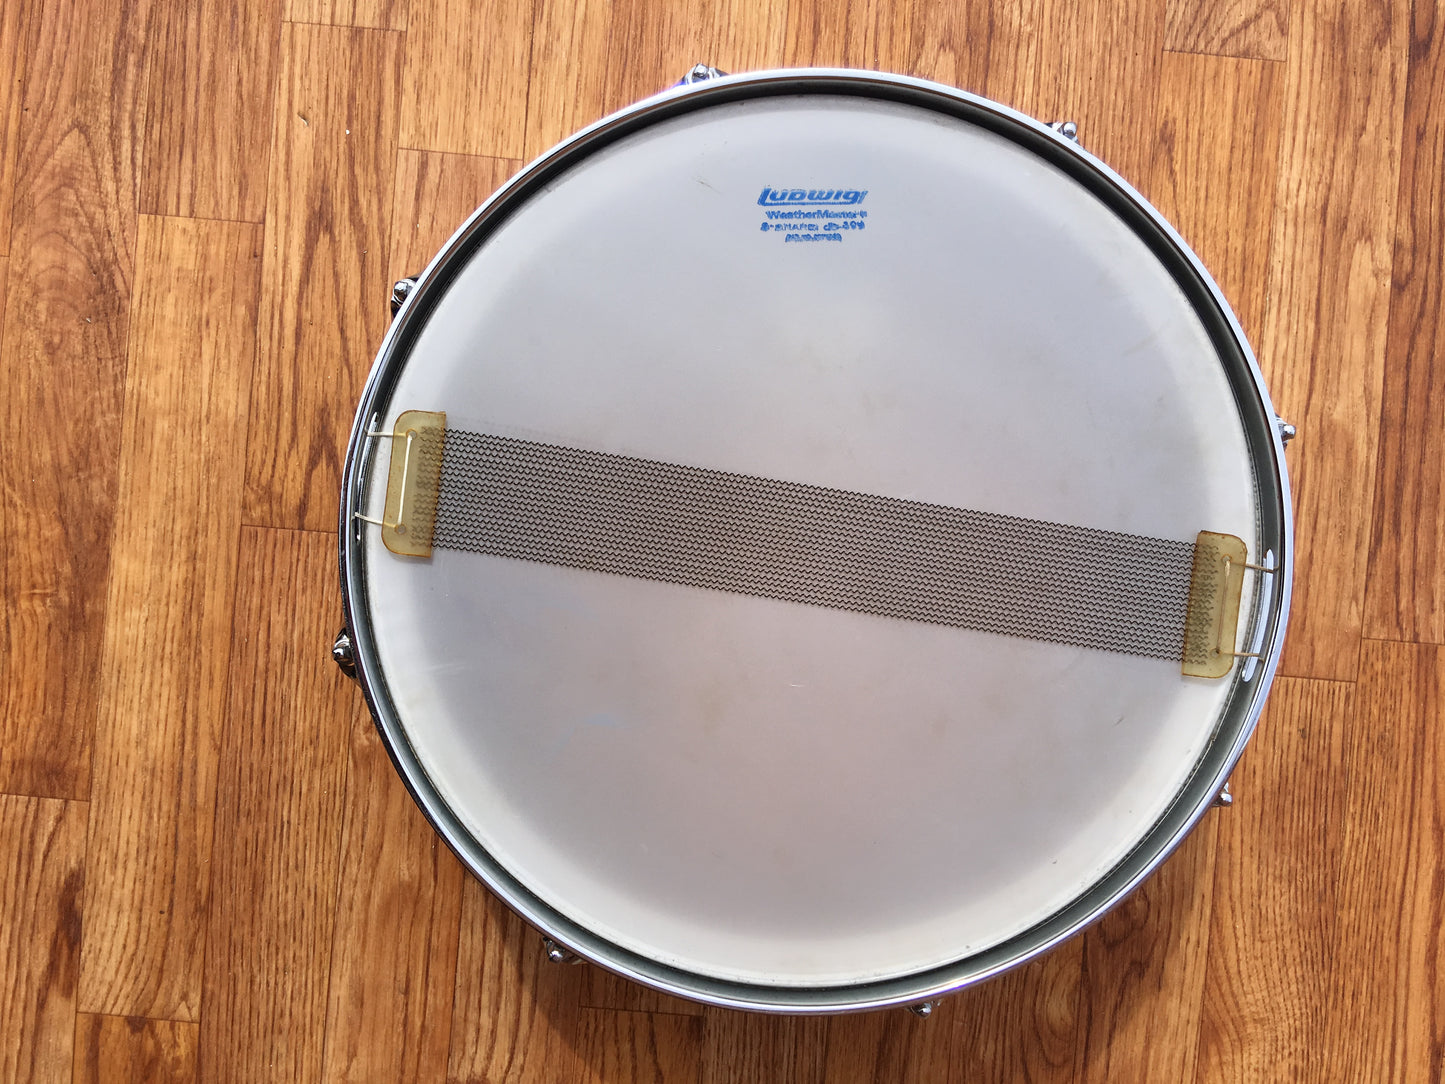 1970 Ludwig Acrolite Snare Drum 5"x14" - Clean